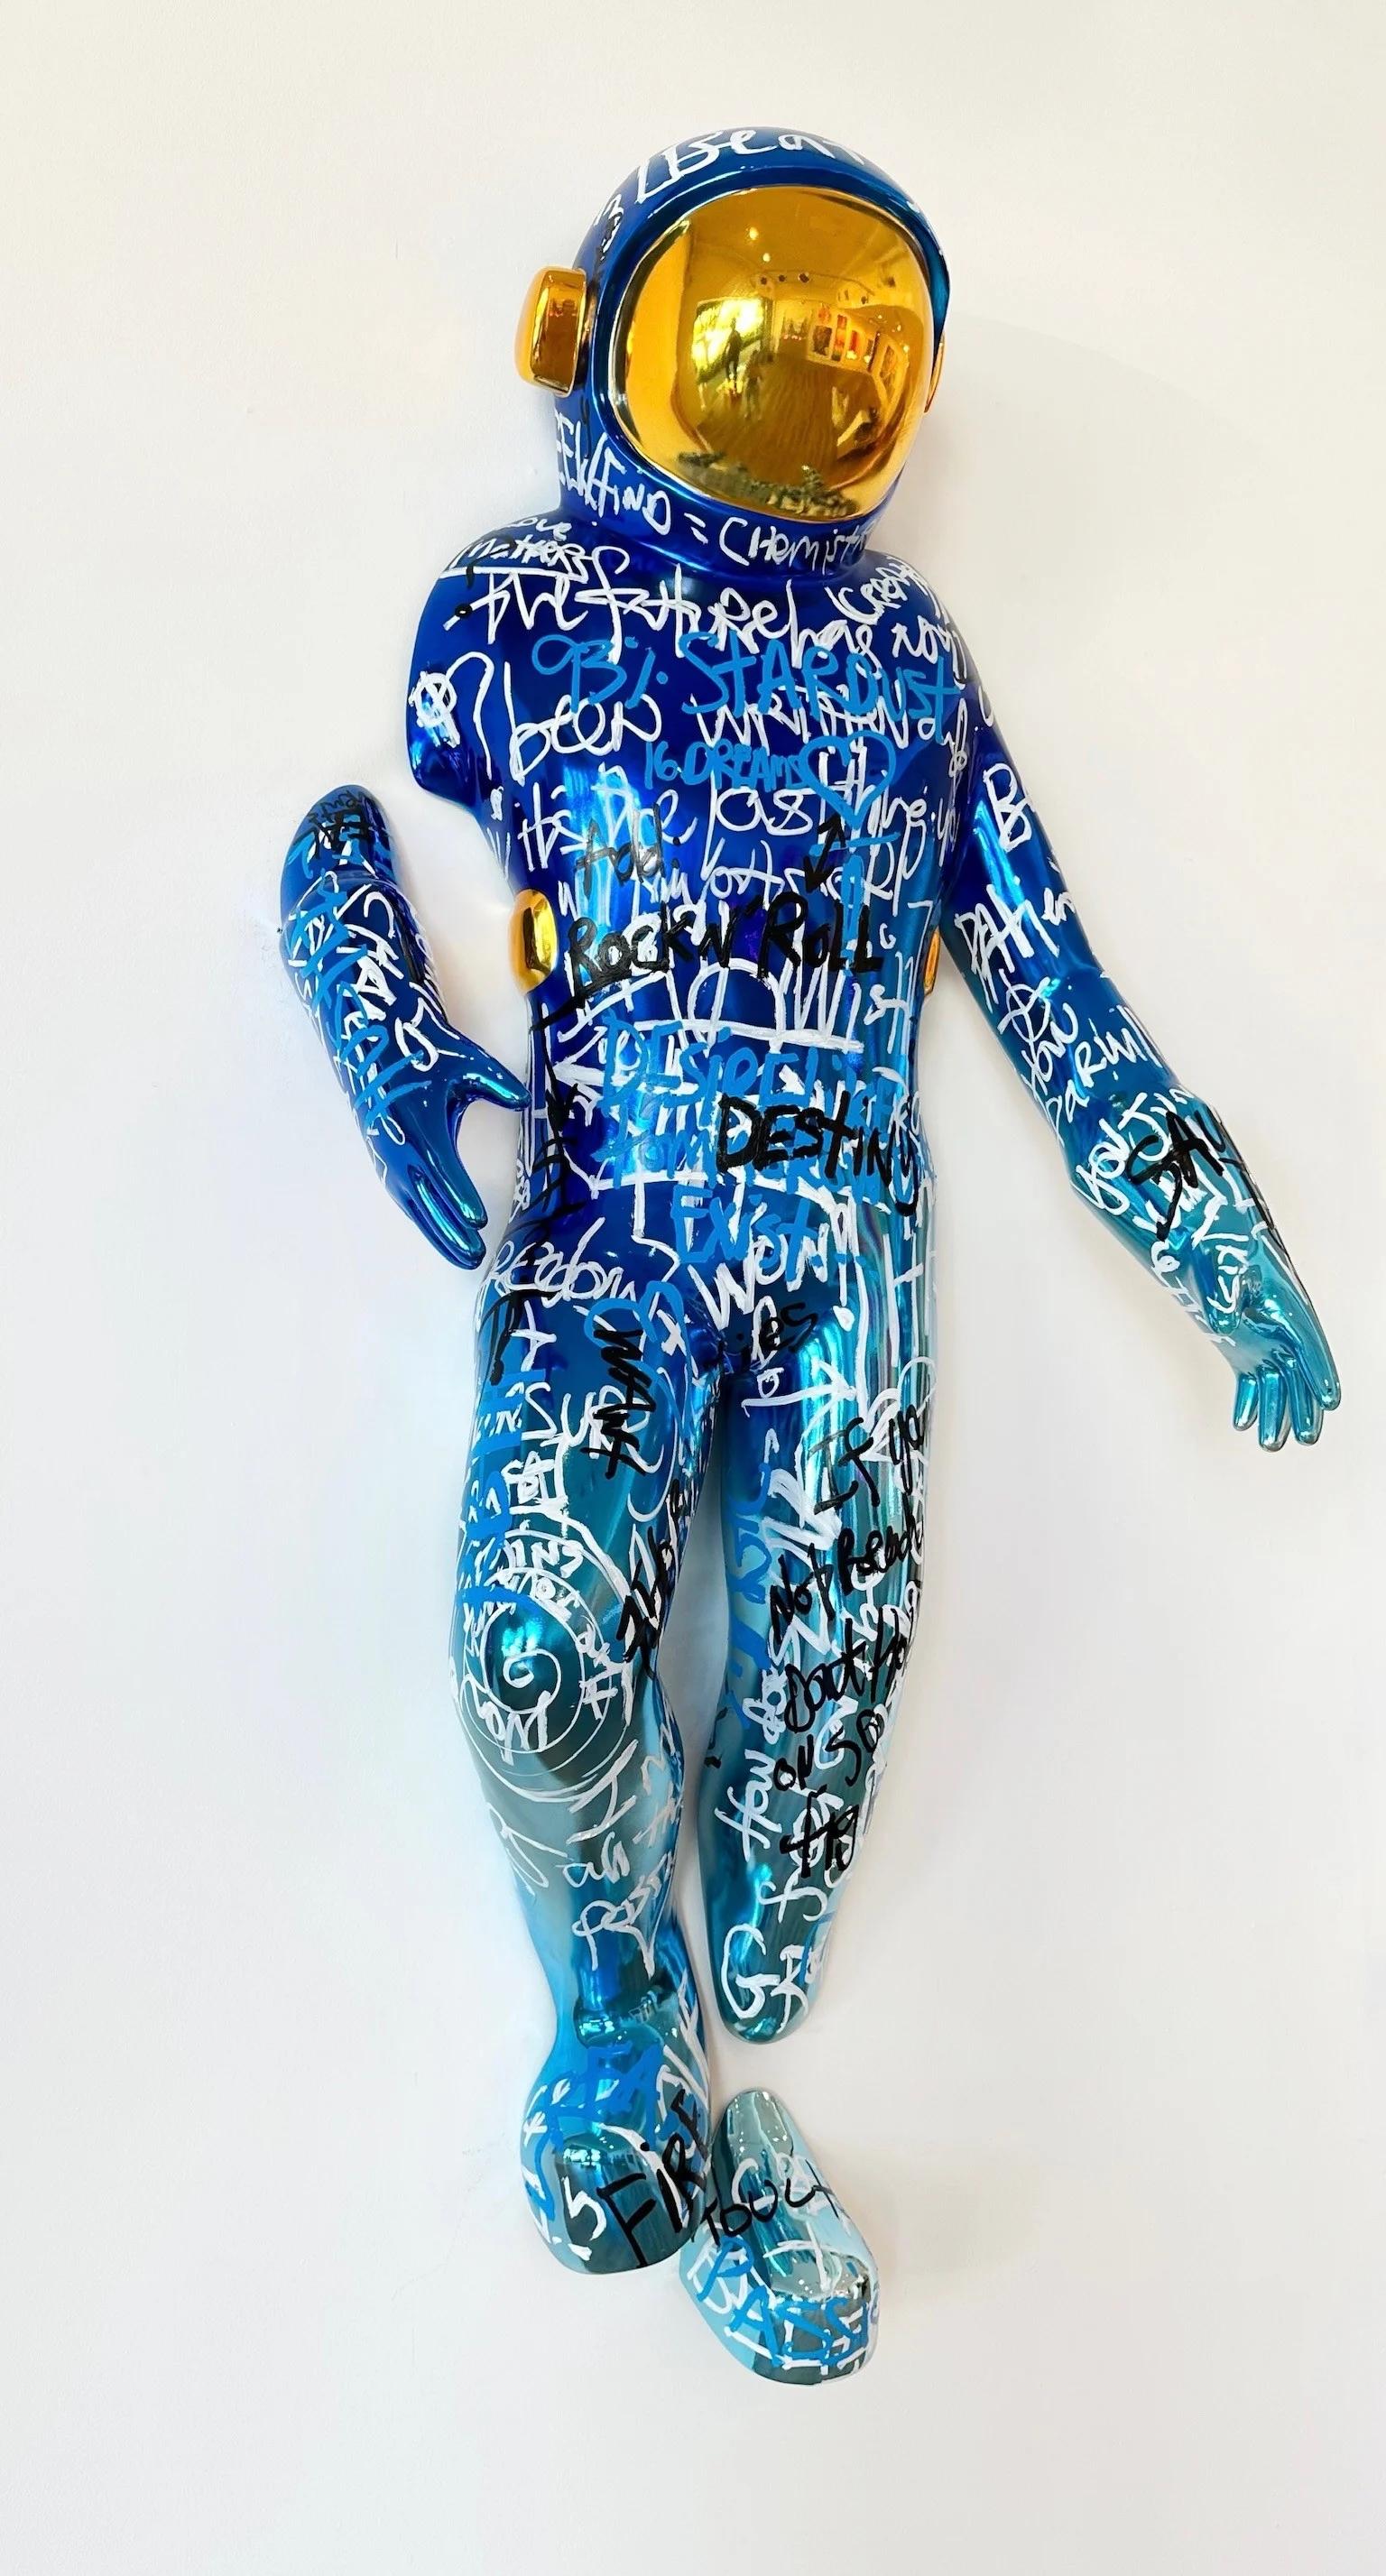 Coming Out (Dark & Light Blue) - Contemporary Sculpture by Brendan Murphy